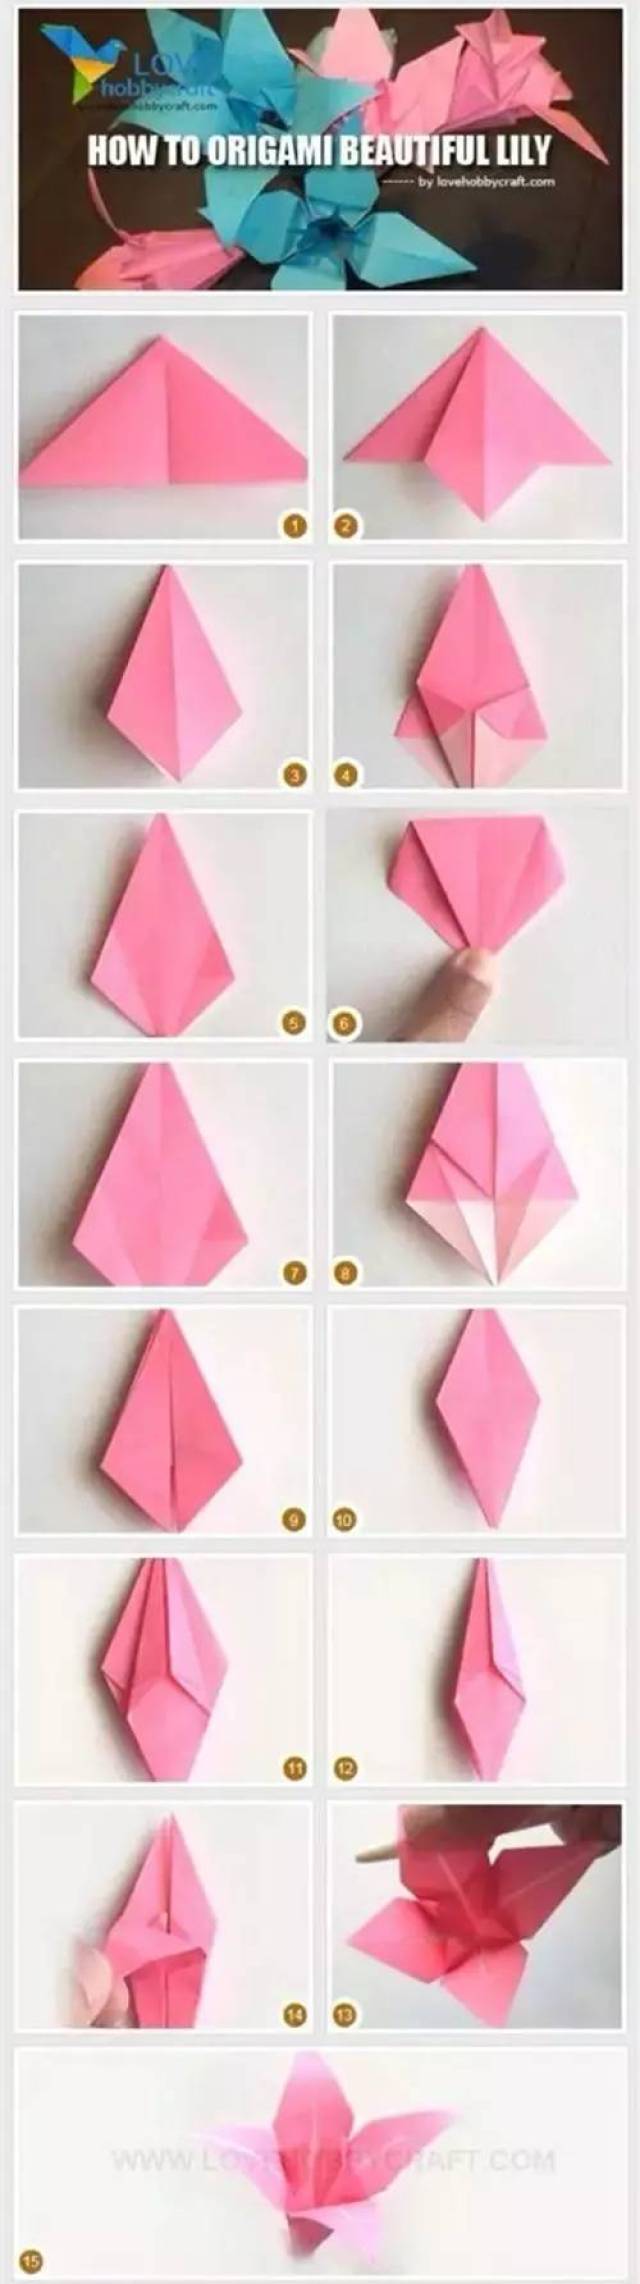 5款简单的折纸花教程来啦!大家千万不要错过!